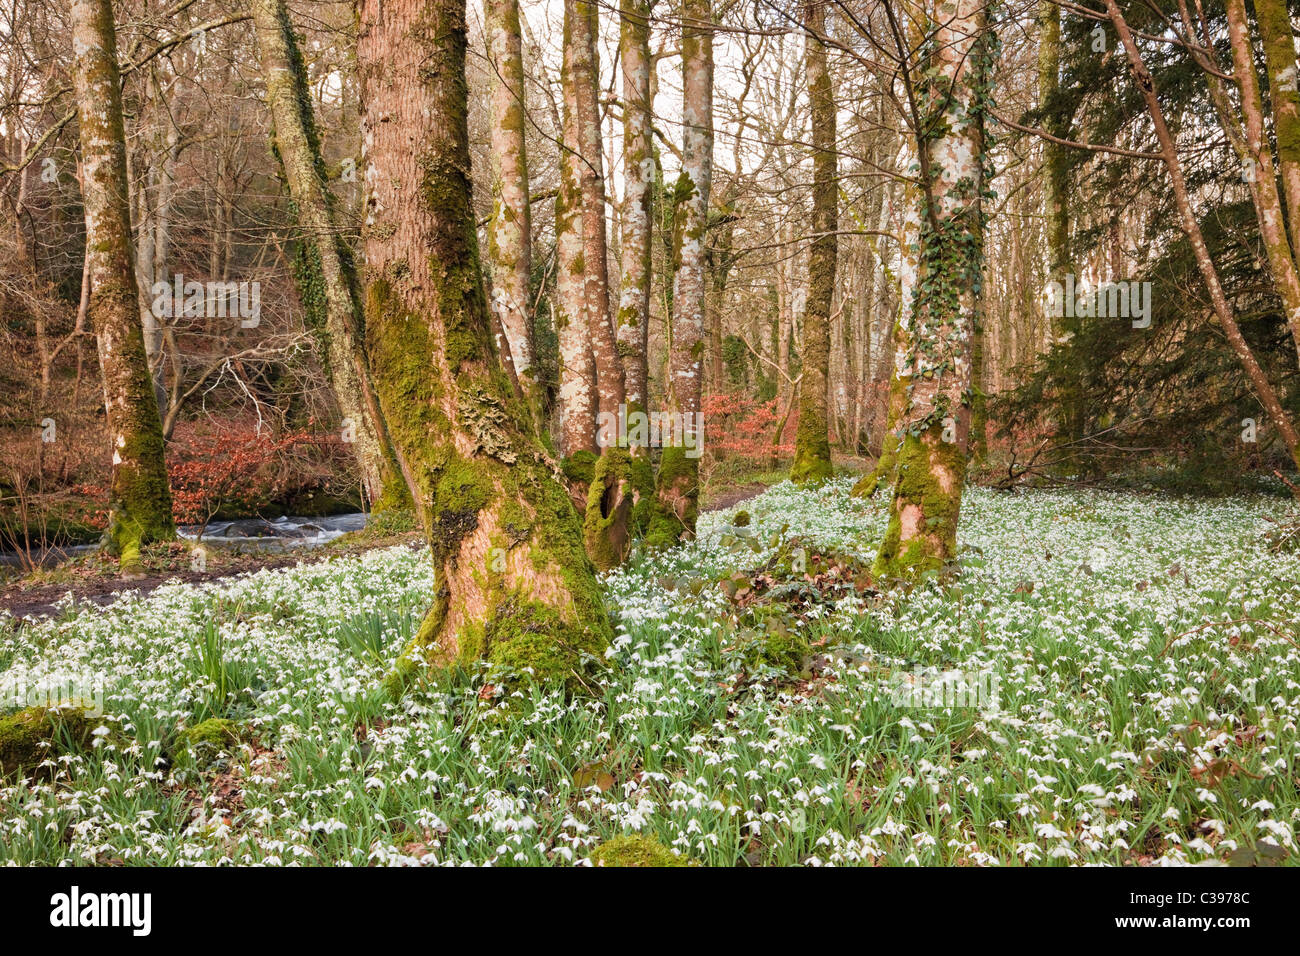 Les Snowdrops sauvages (Galanthus nivalis) poussent dans des bois décidus près de la rivière Afon Dwyfor à la fin de l'hiver. Gwynedd, Pays de Galles du Nord, Royaume-Uni, Grande-Bretagne. Banque D'Images